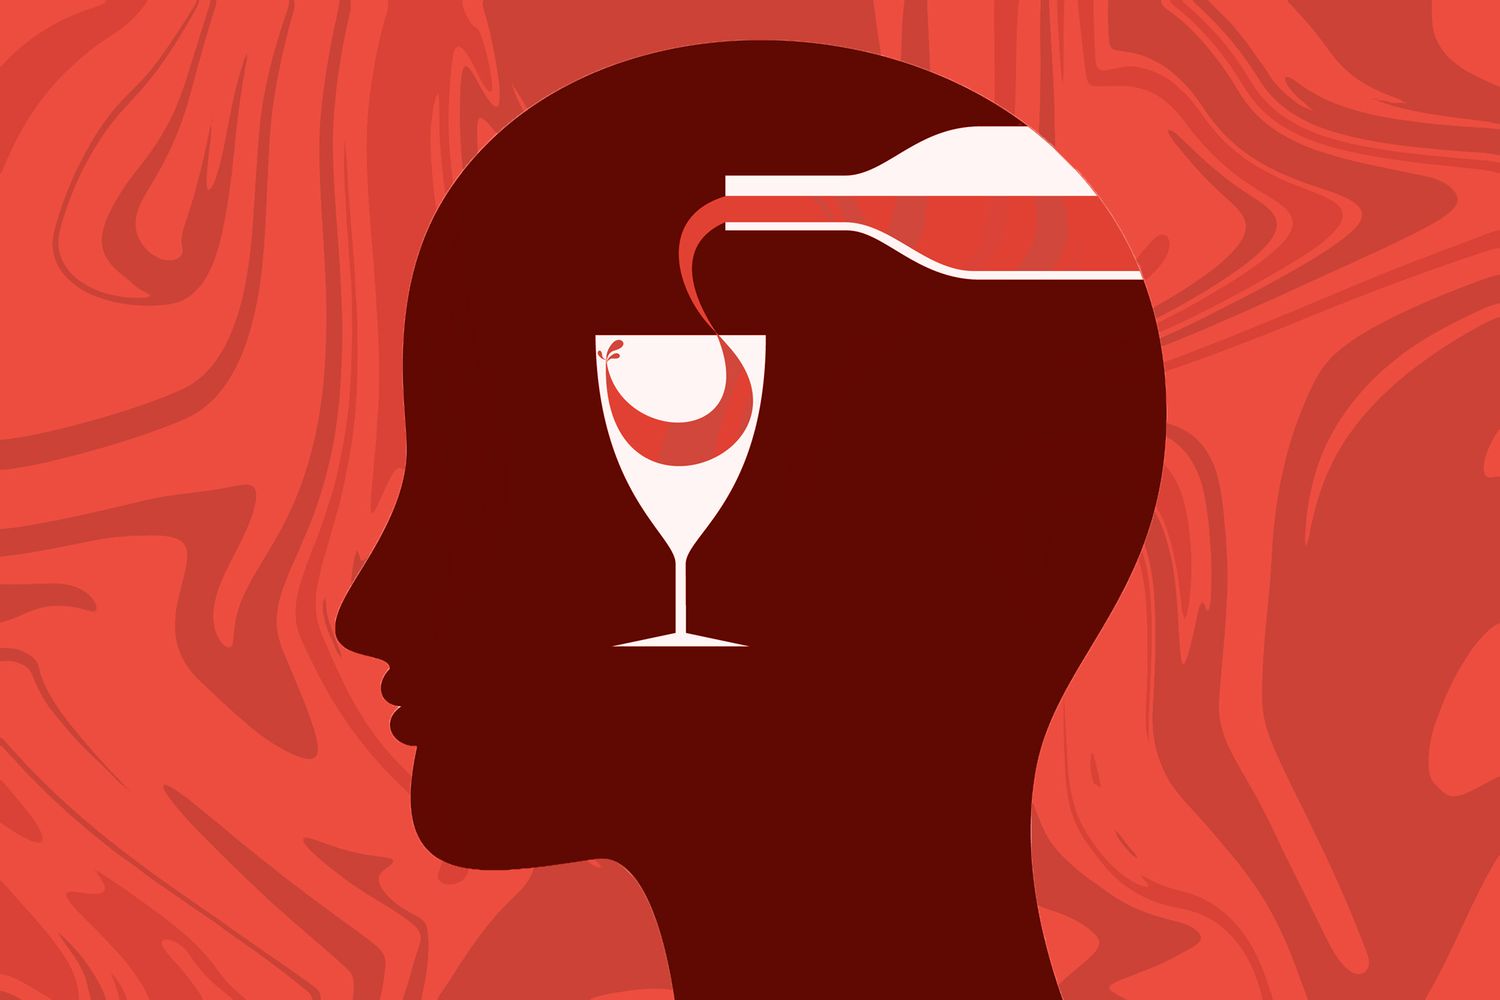 Ilustración de la silueta de una cabeza con una copa de vino y una botella de vino dentro del cerebro